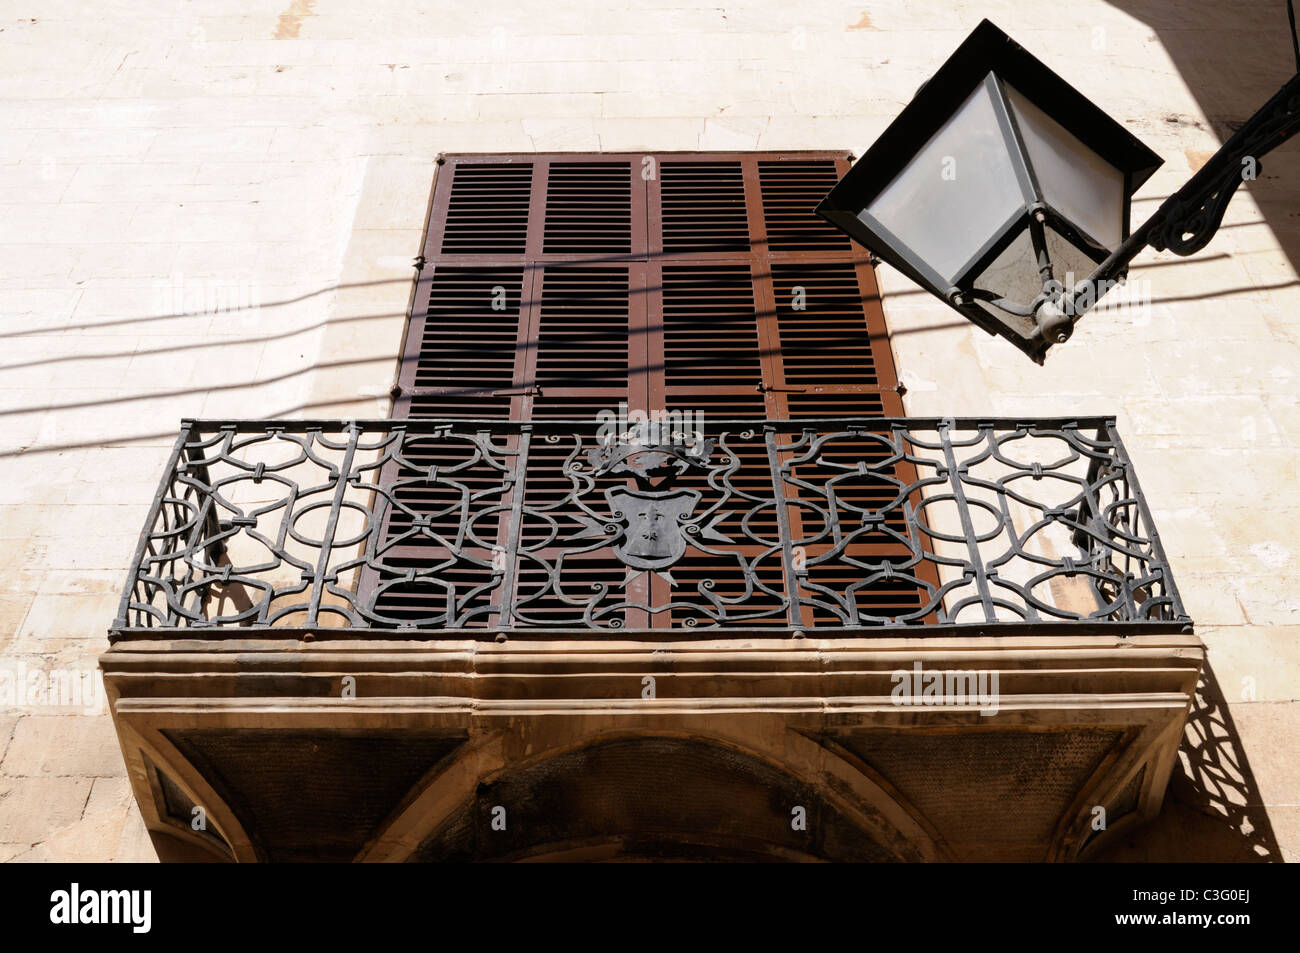 Schmiedeeiserner Balkon, Altstadt von Palma, Mallorca, Spanien. -Schmiedeeisernen Balkon, Altstadt von Palma, Mallorca, Spanien. Stockfoto